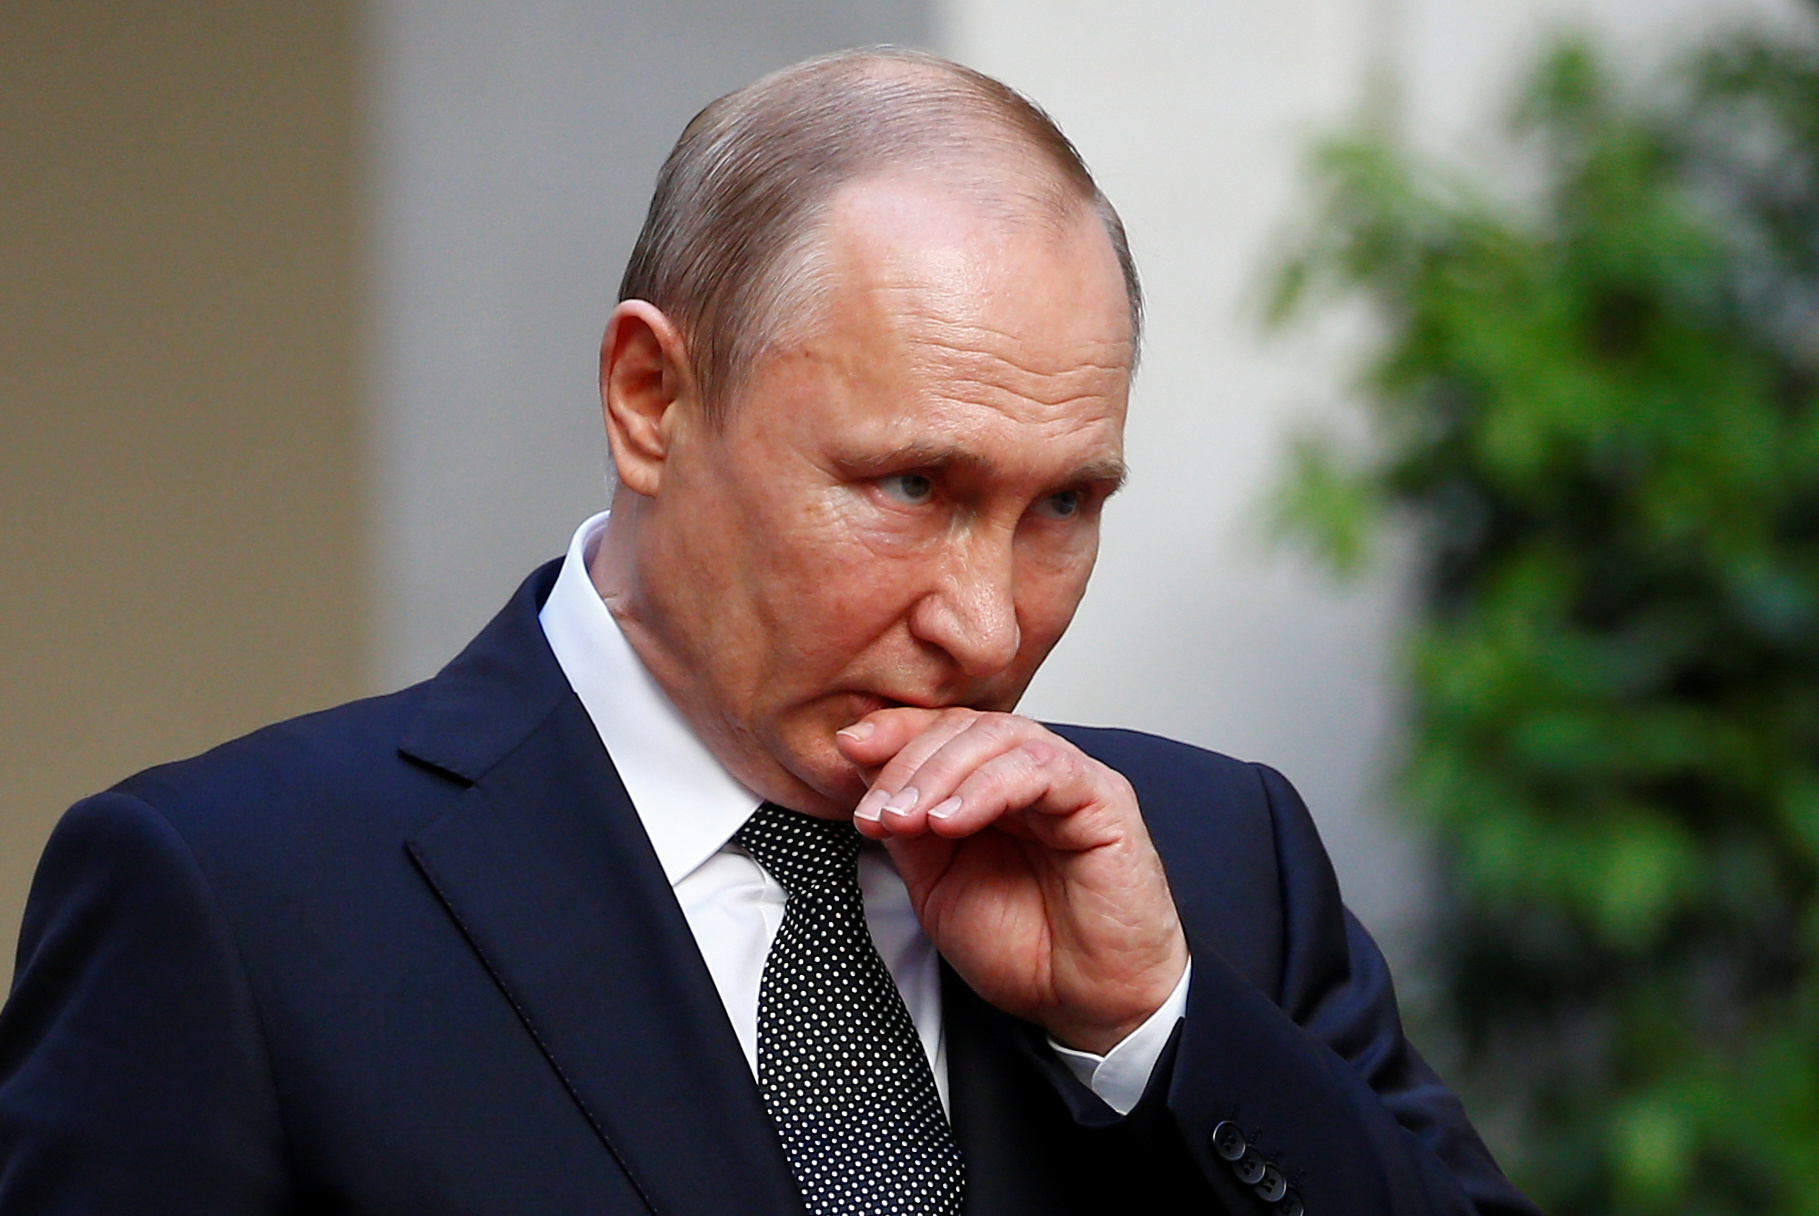 Putin condecora a título póstumo a marineros del submarino accidentado